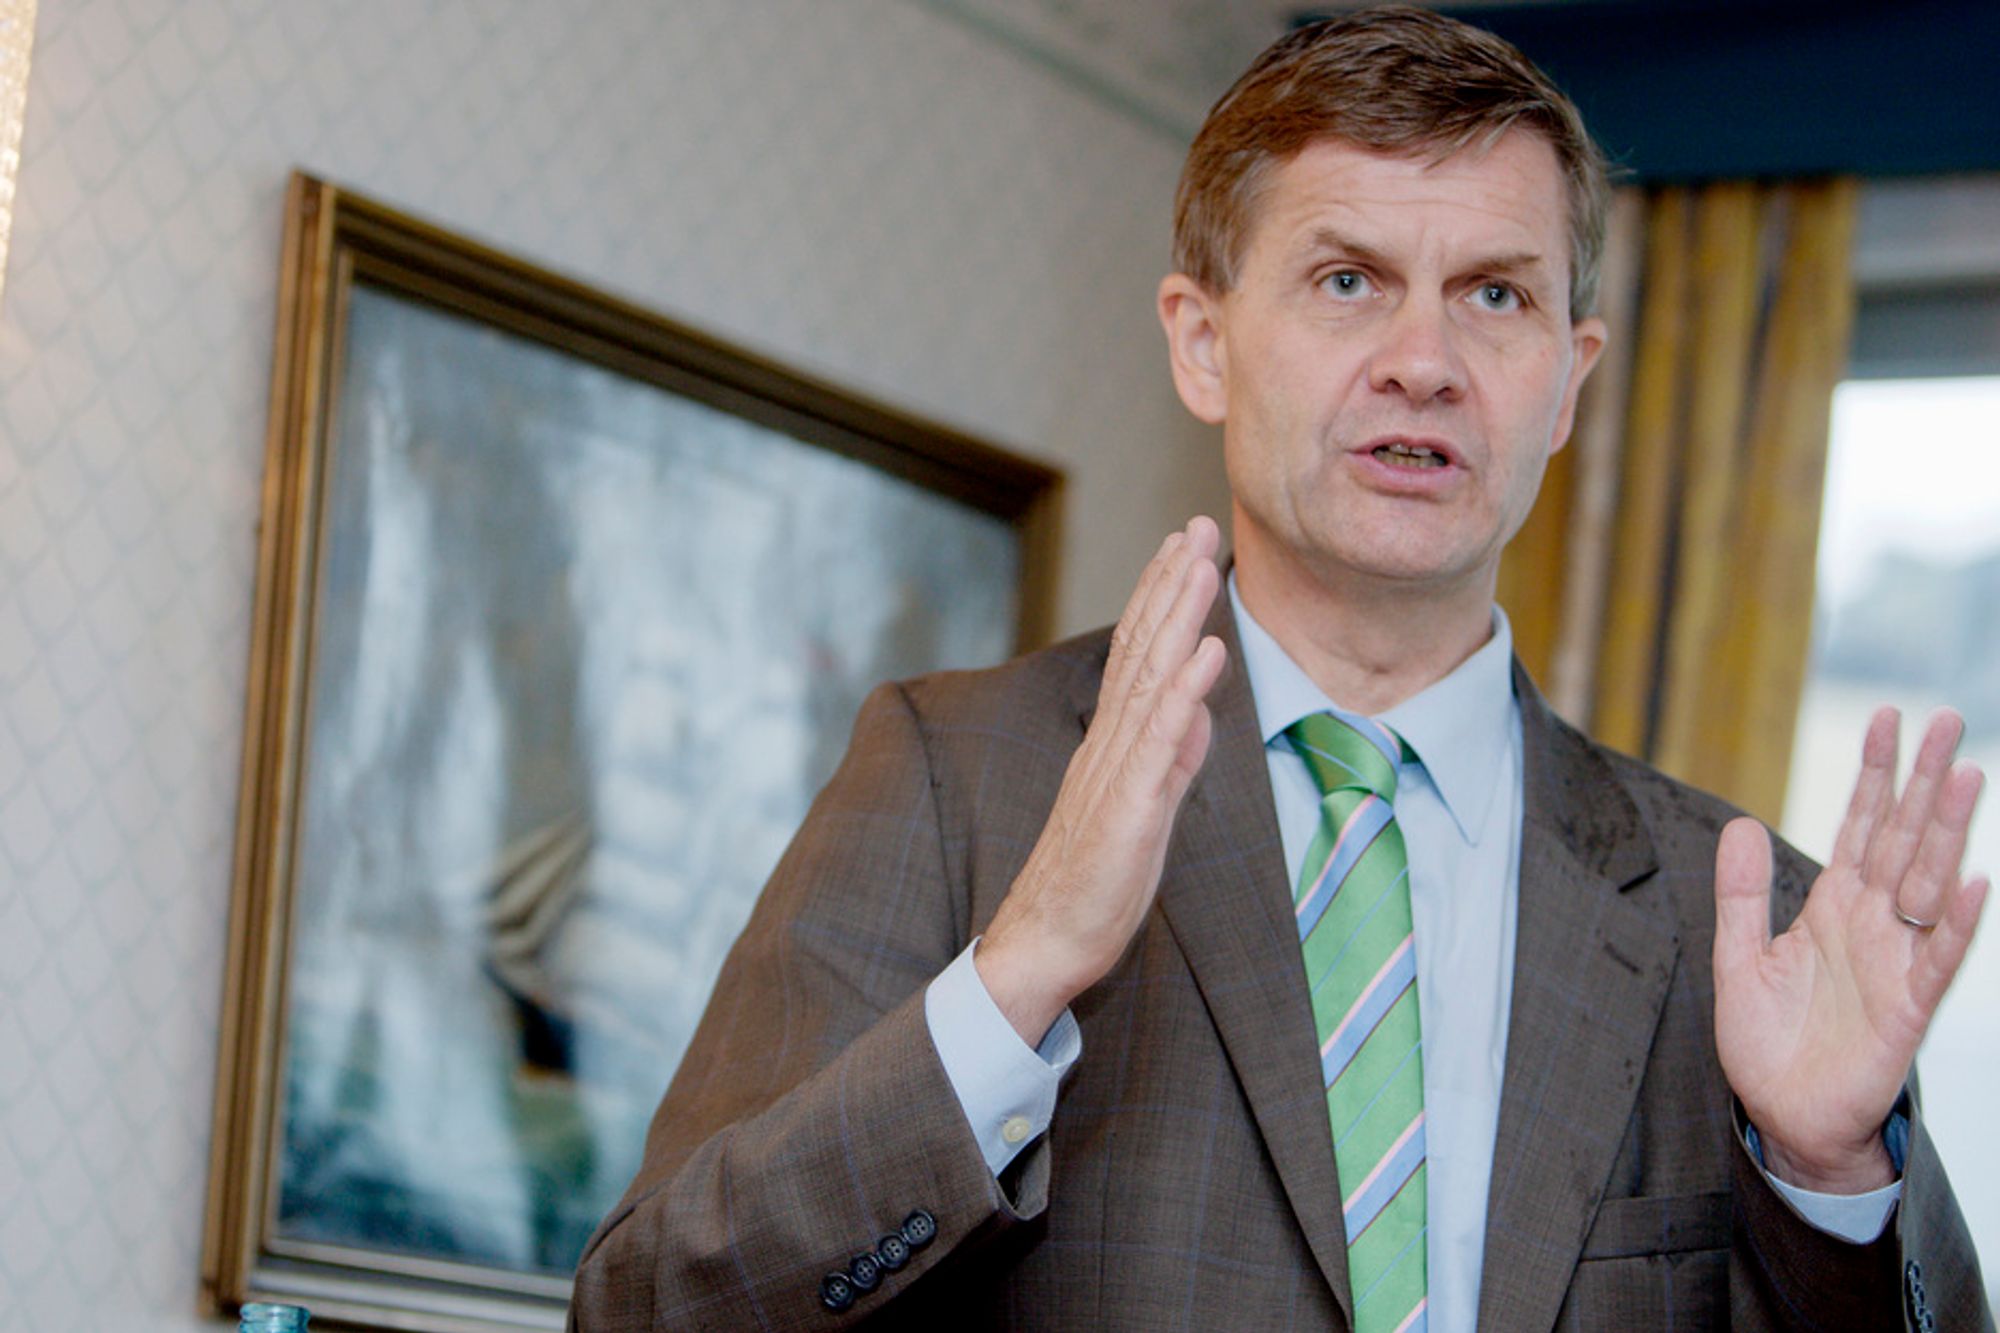 Miljøvern- og utviklingsminister Erik Solheim lanserer valgflesk for de miljøfokuserte foran valget i september.